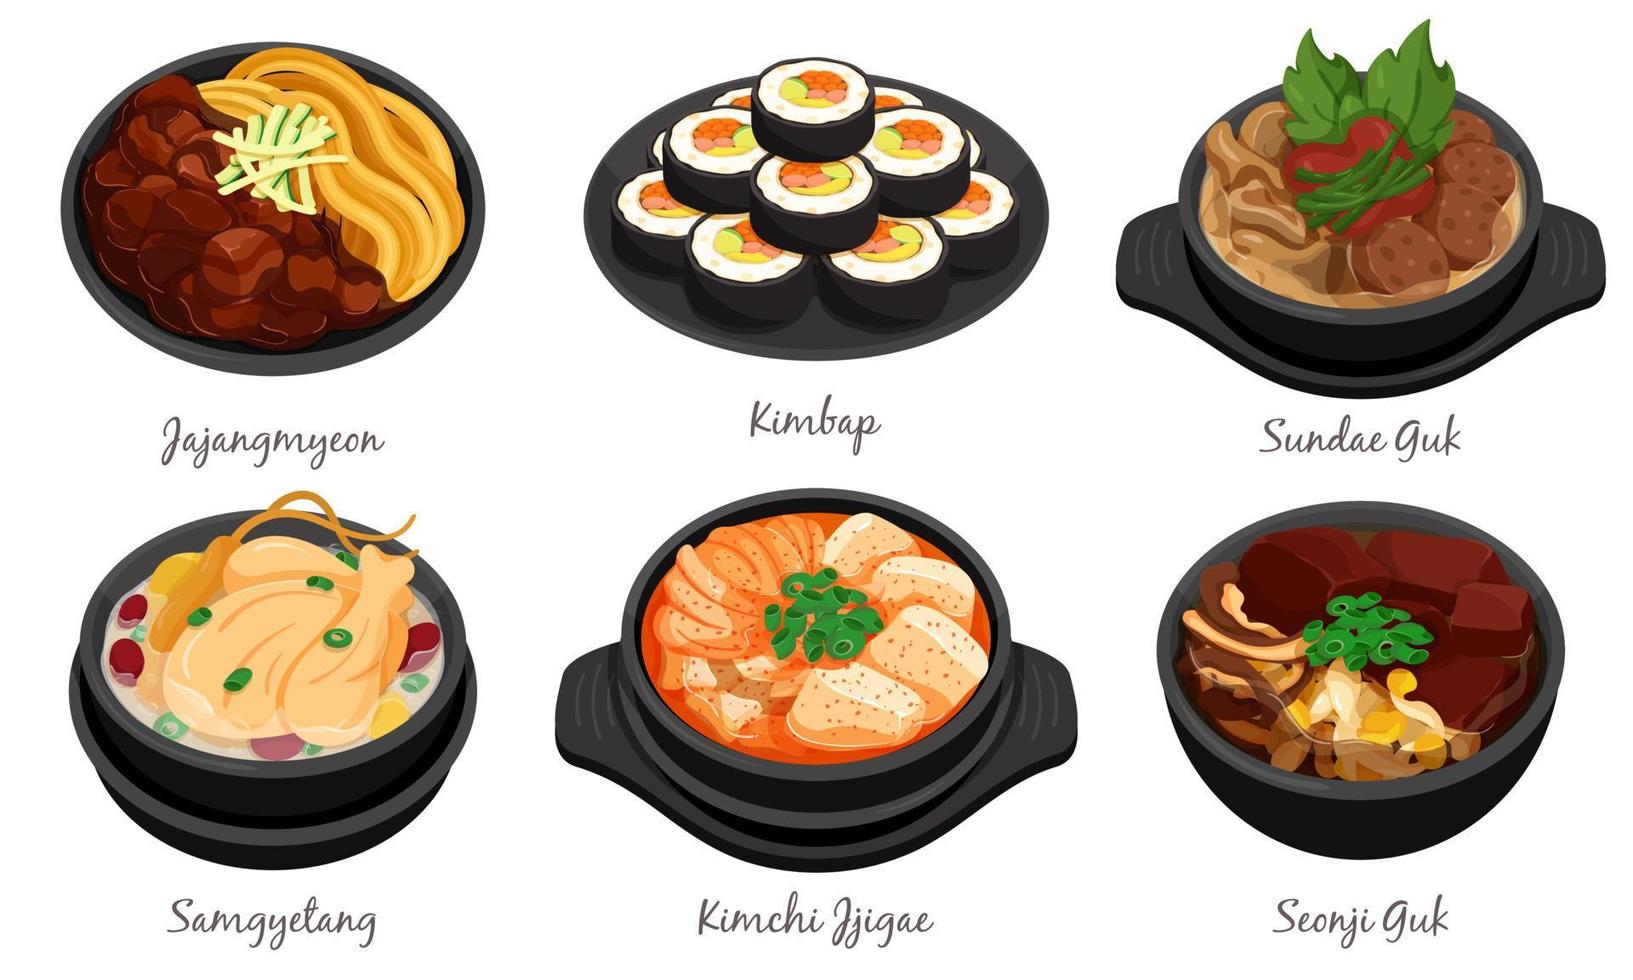 Korean food set menu on wood background illustration vector. Kimbap,  Tteokbokki, Bibimbap, Kimchi, Sauce and Rice 7884936 Vector Art at Vecteezy